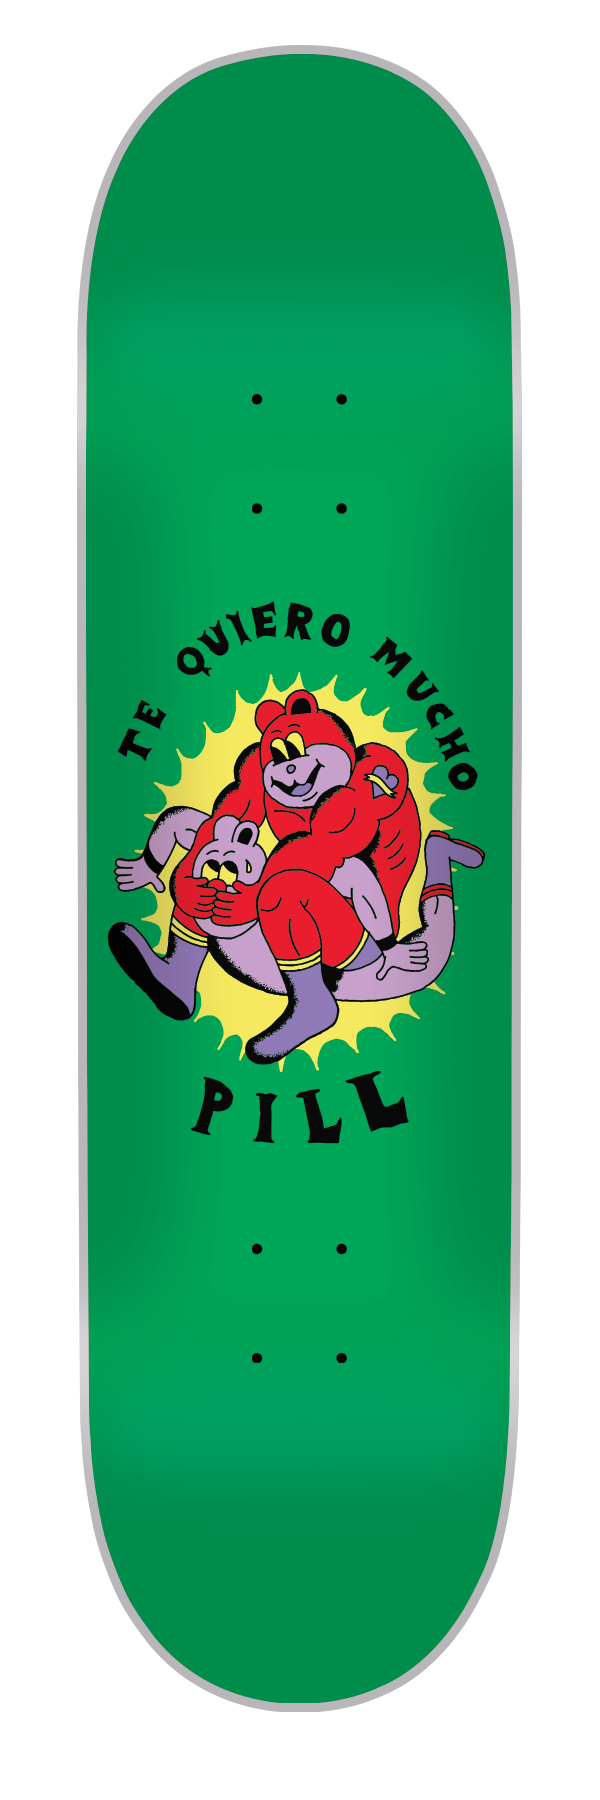 Pill - Tabla Te quiero Mucho Green 8.5x32.15 - Lo Mejor De The Pill Company - Solo Por $29990! Compra Ahora En Wallride Skateshop